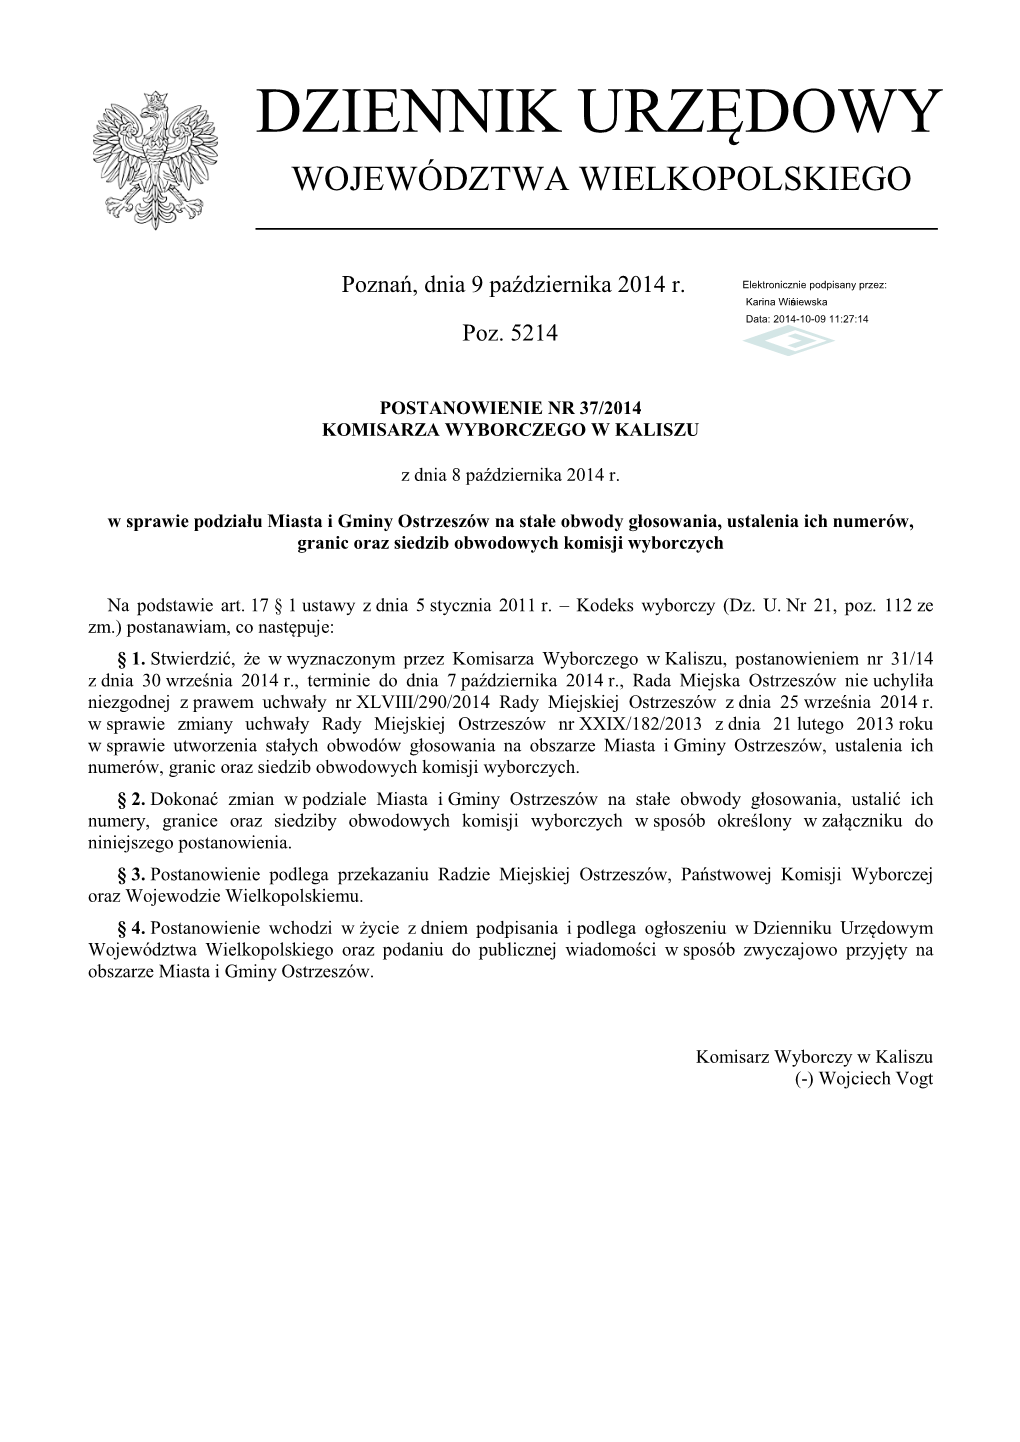 Postanowienie Nr 37/2014 Z Dnia 8 Października 2014 R